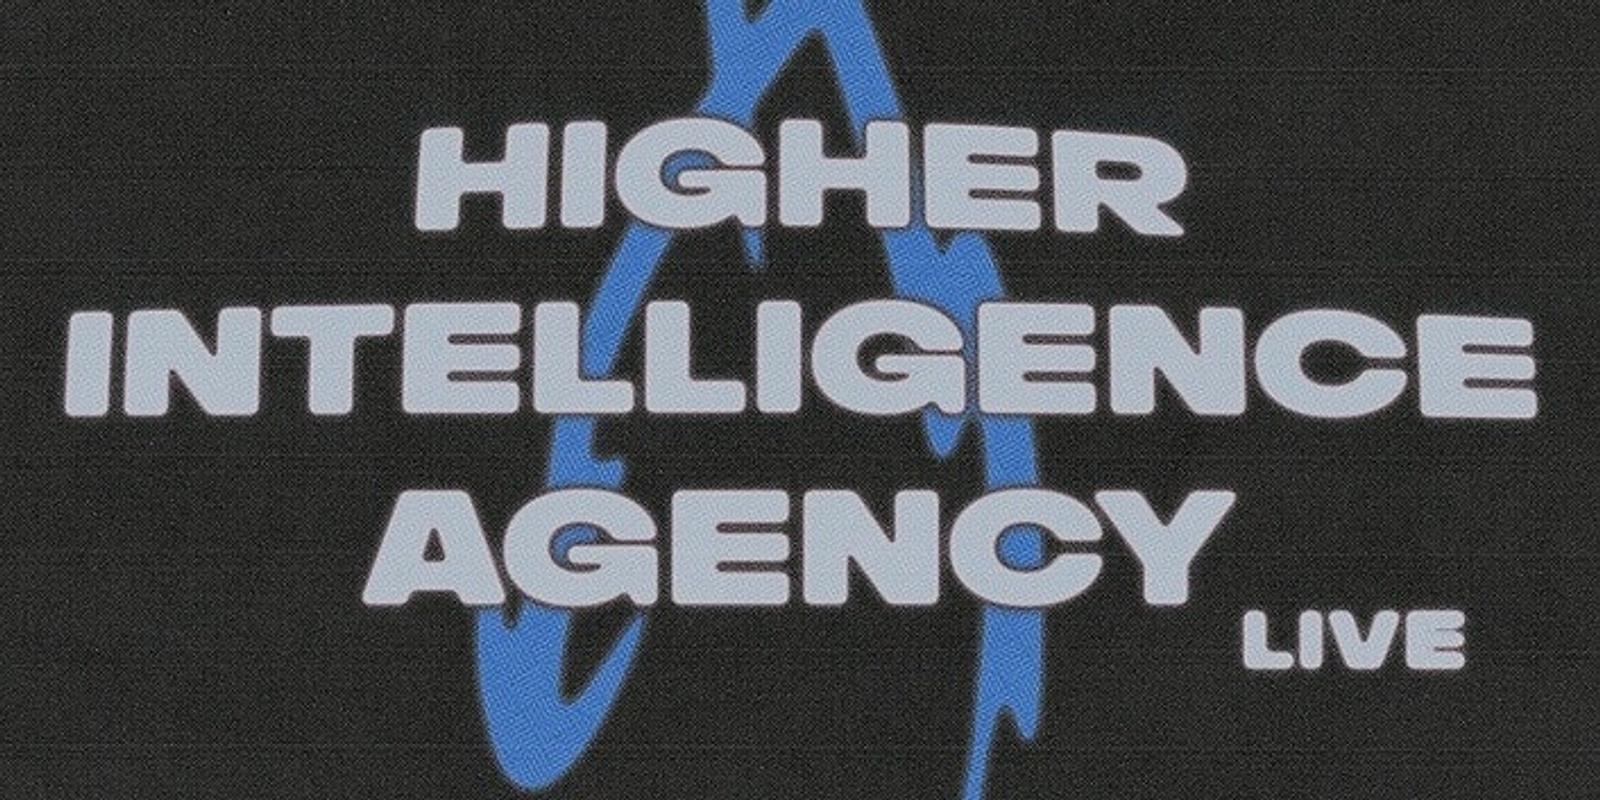 c̵i̷r̴c̵u̴i̸t̷ ̴b̷e̵n̴d̵e̷r̵s̷ x paper cuts w/ higher intelligence agency 